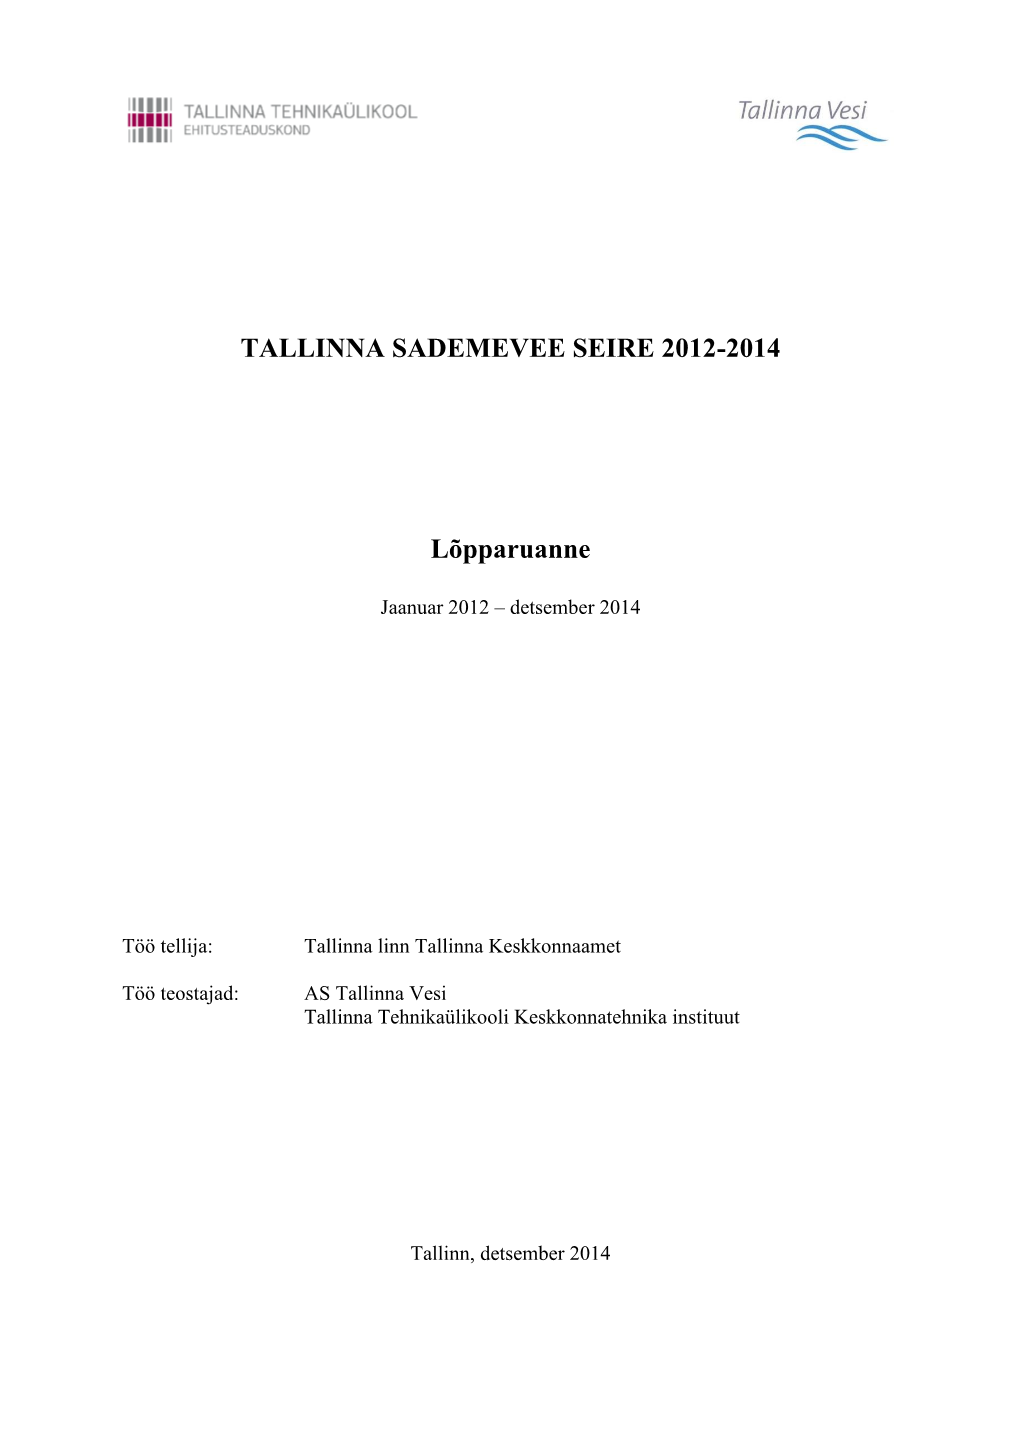 TALLINNA SADEMEVEE SEIRE 2012-2014 Lõpparuanne